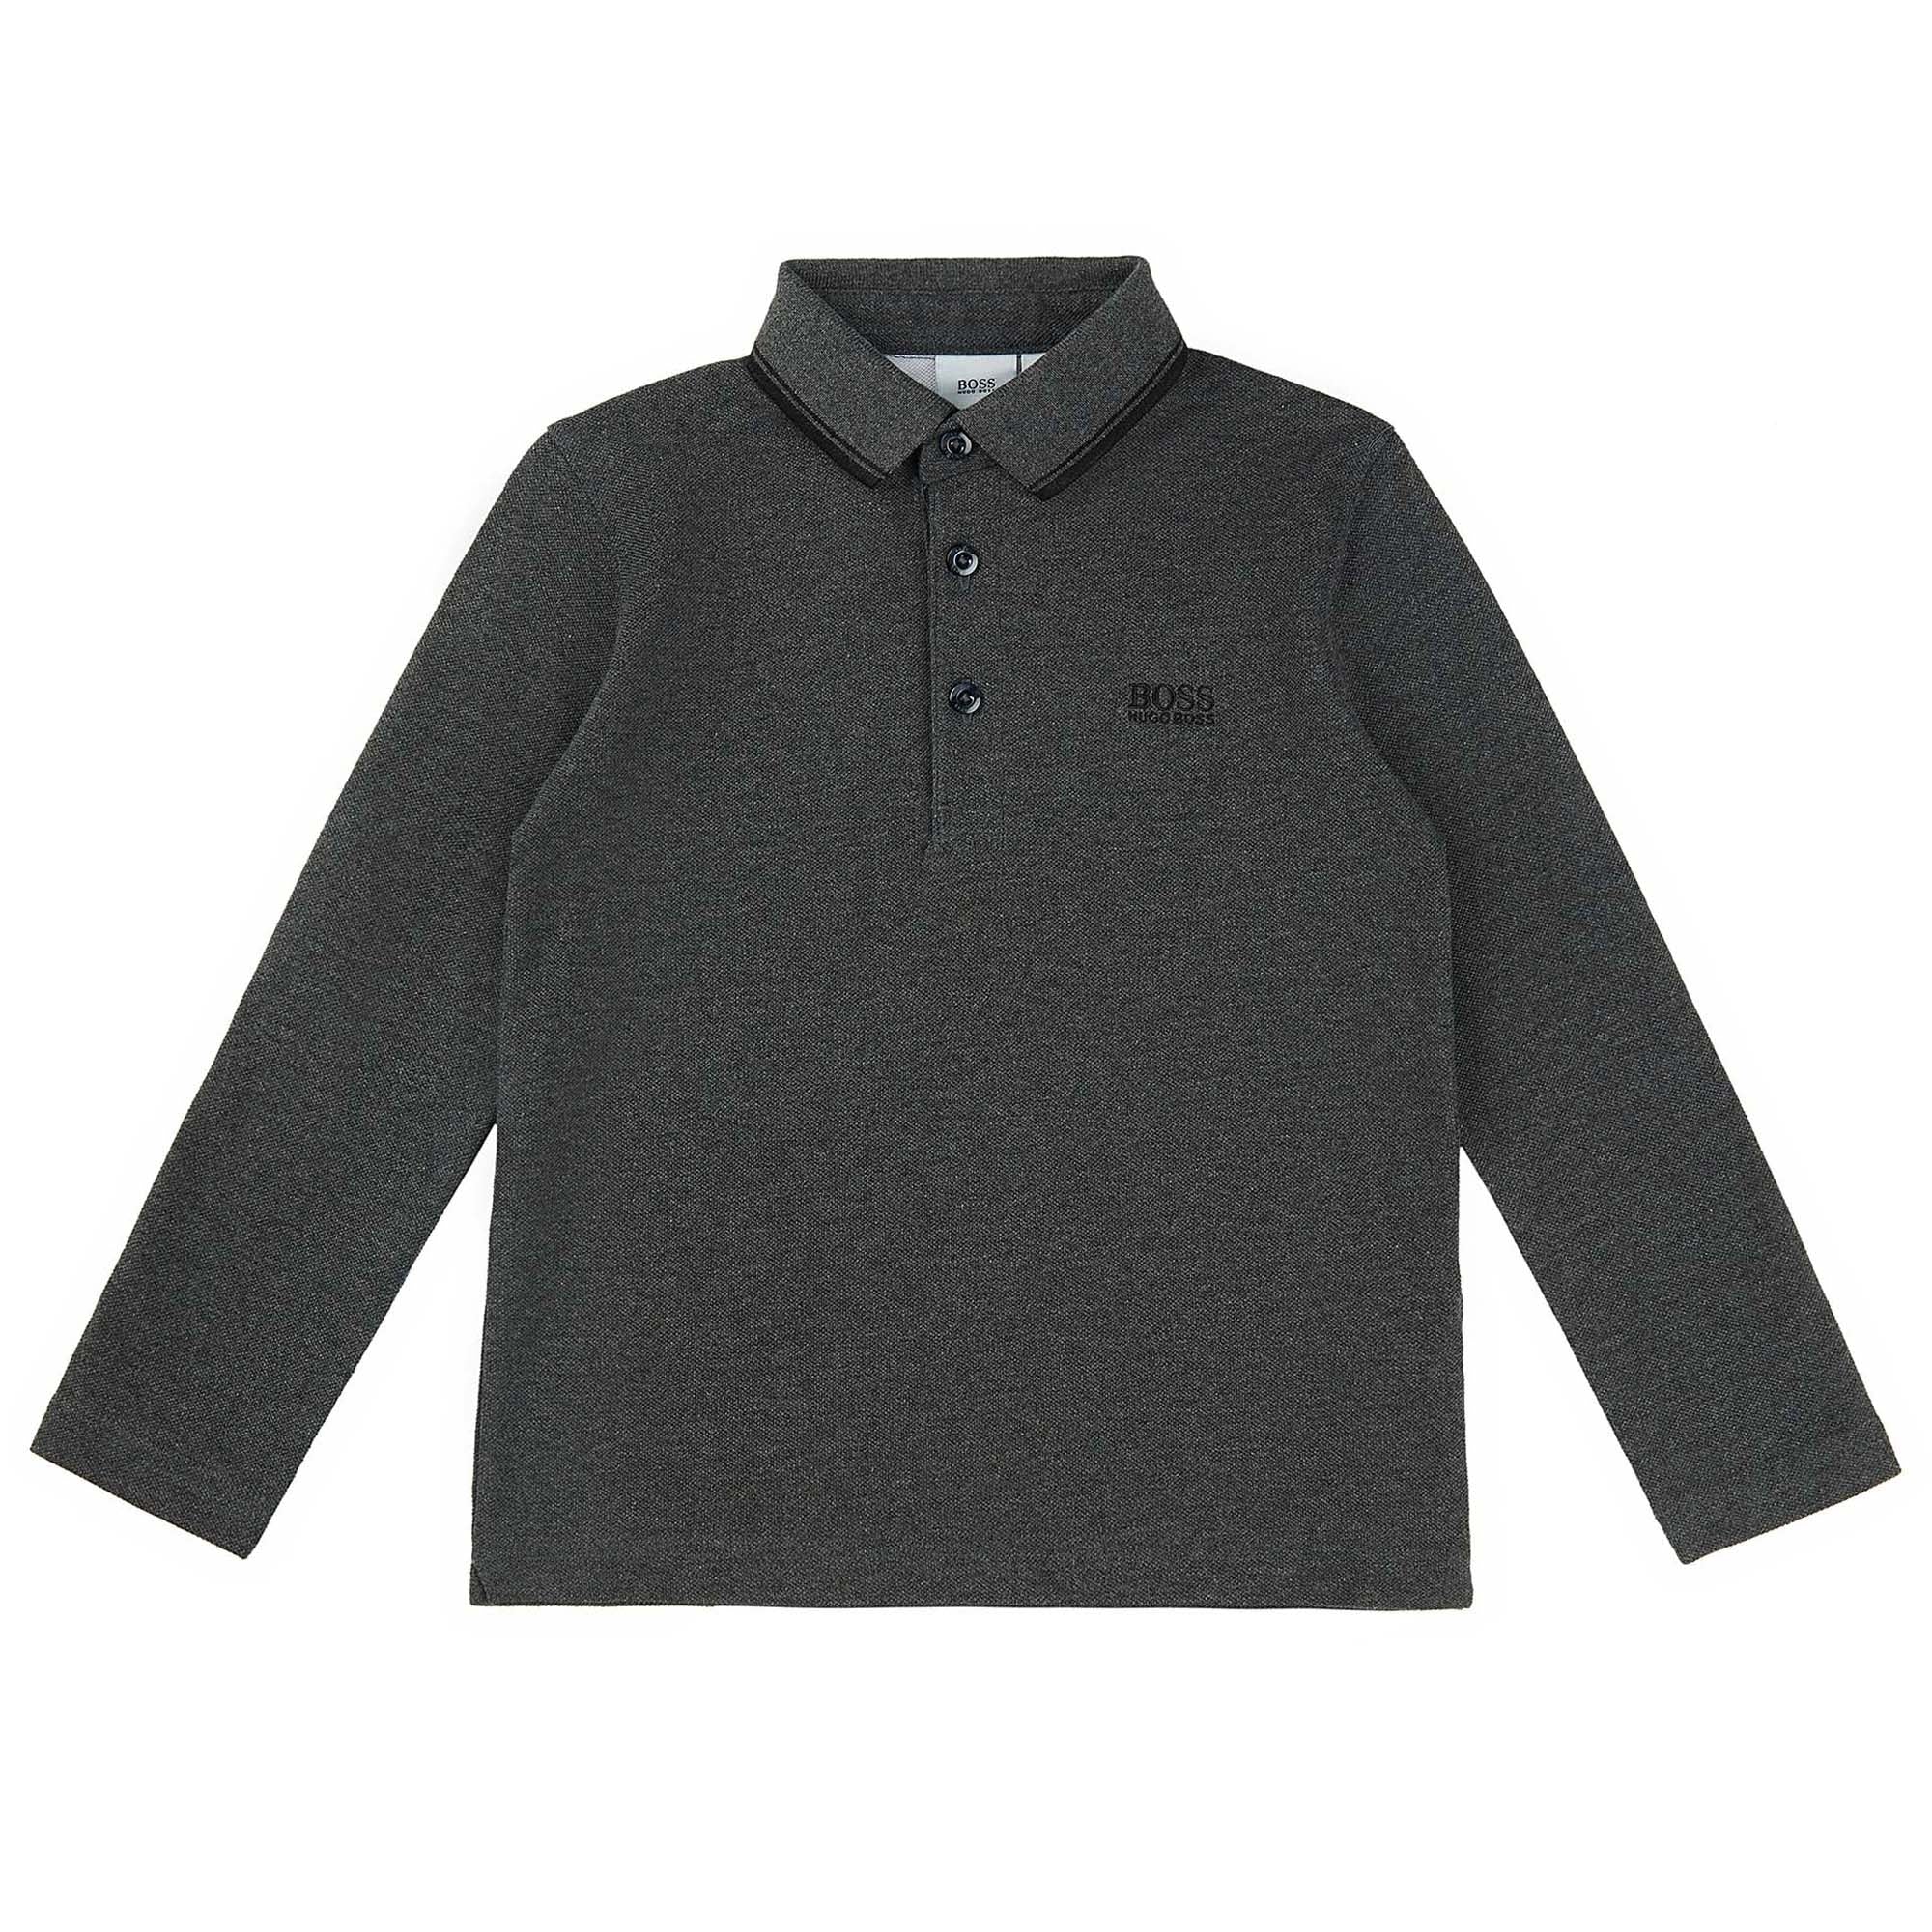 Boys Dark Grey Cotton Polo Shirt